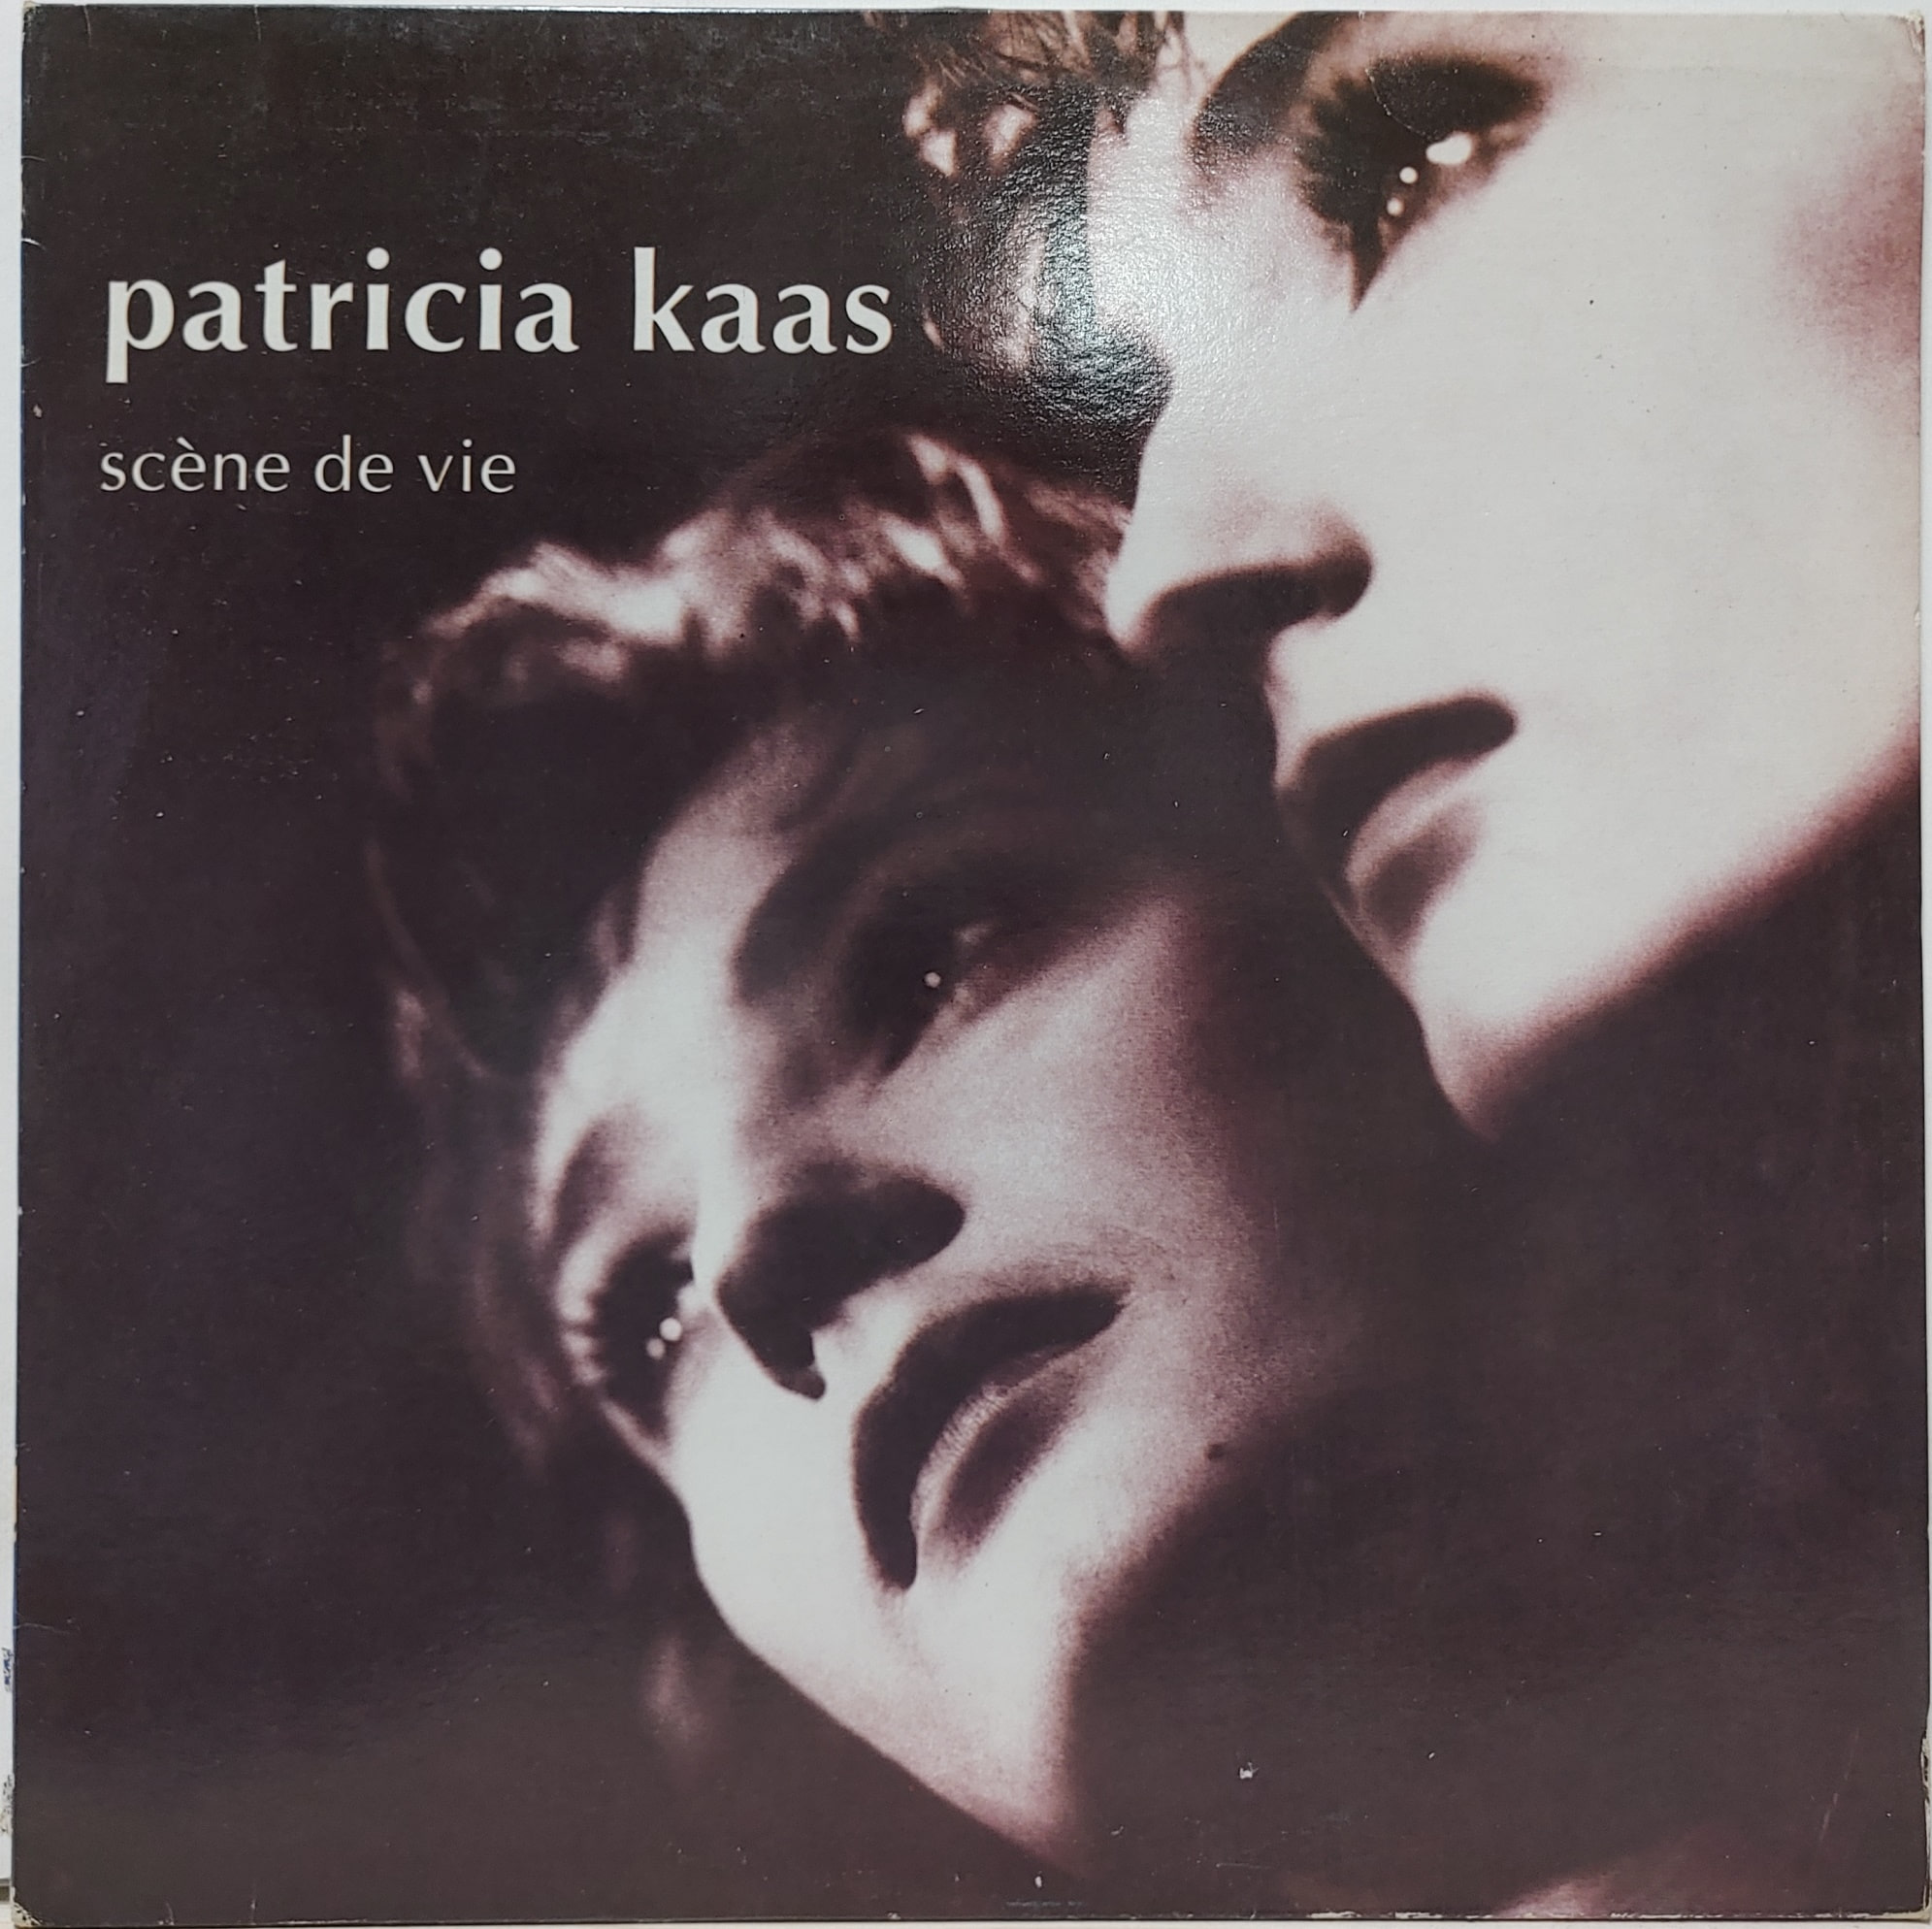 PATRICIA KAAS / SCENE DE VIE